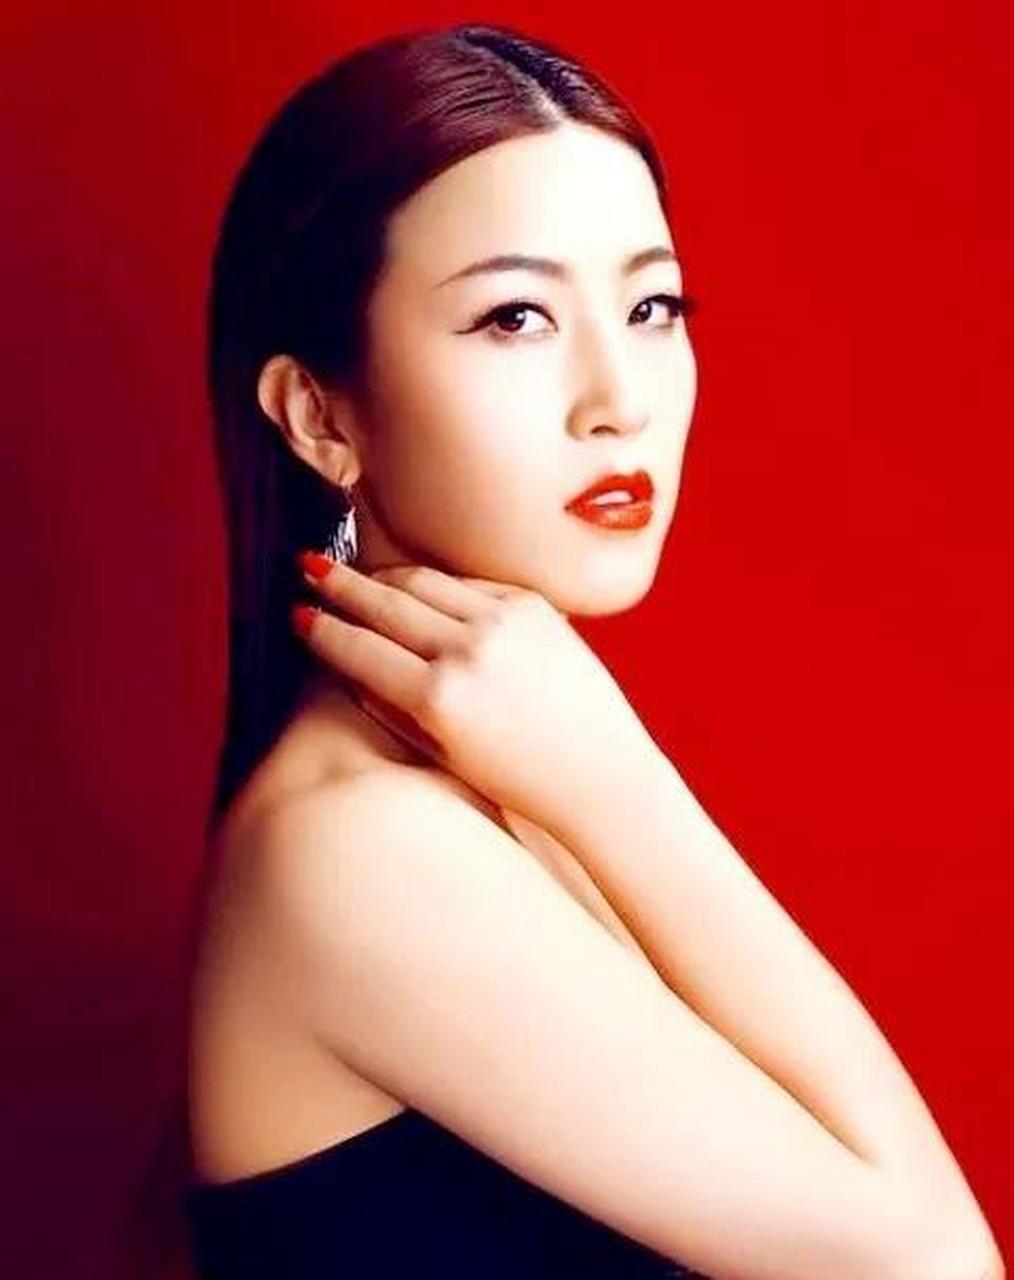 陕西女歌手——郭涛 郭涛,大陆女 歌手 ,出生于 西安 ,曾参加2012年